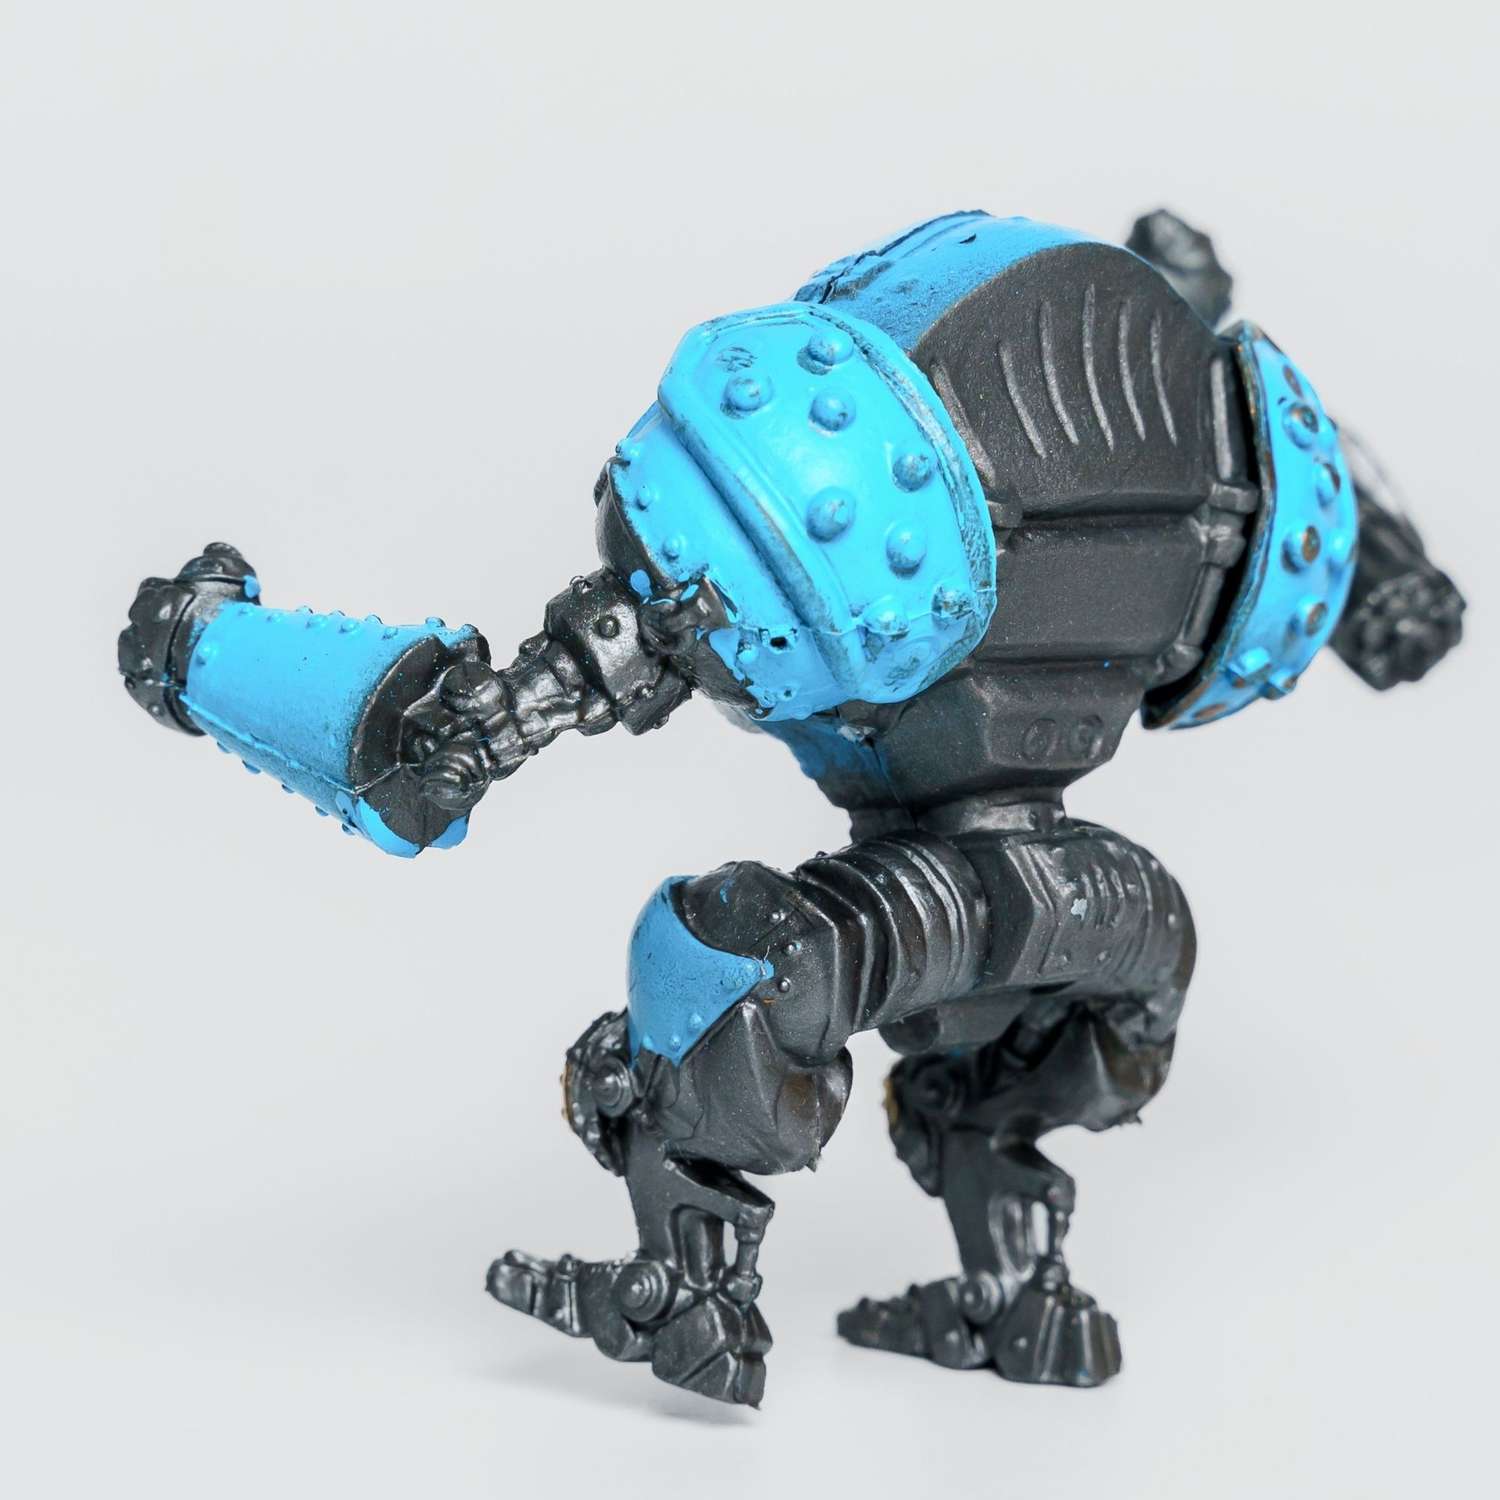 Роботы CyberCode 3 фигурки игрушки для детей развивающие пластиковые коллекционные интересные. 8см - фото 9